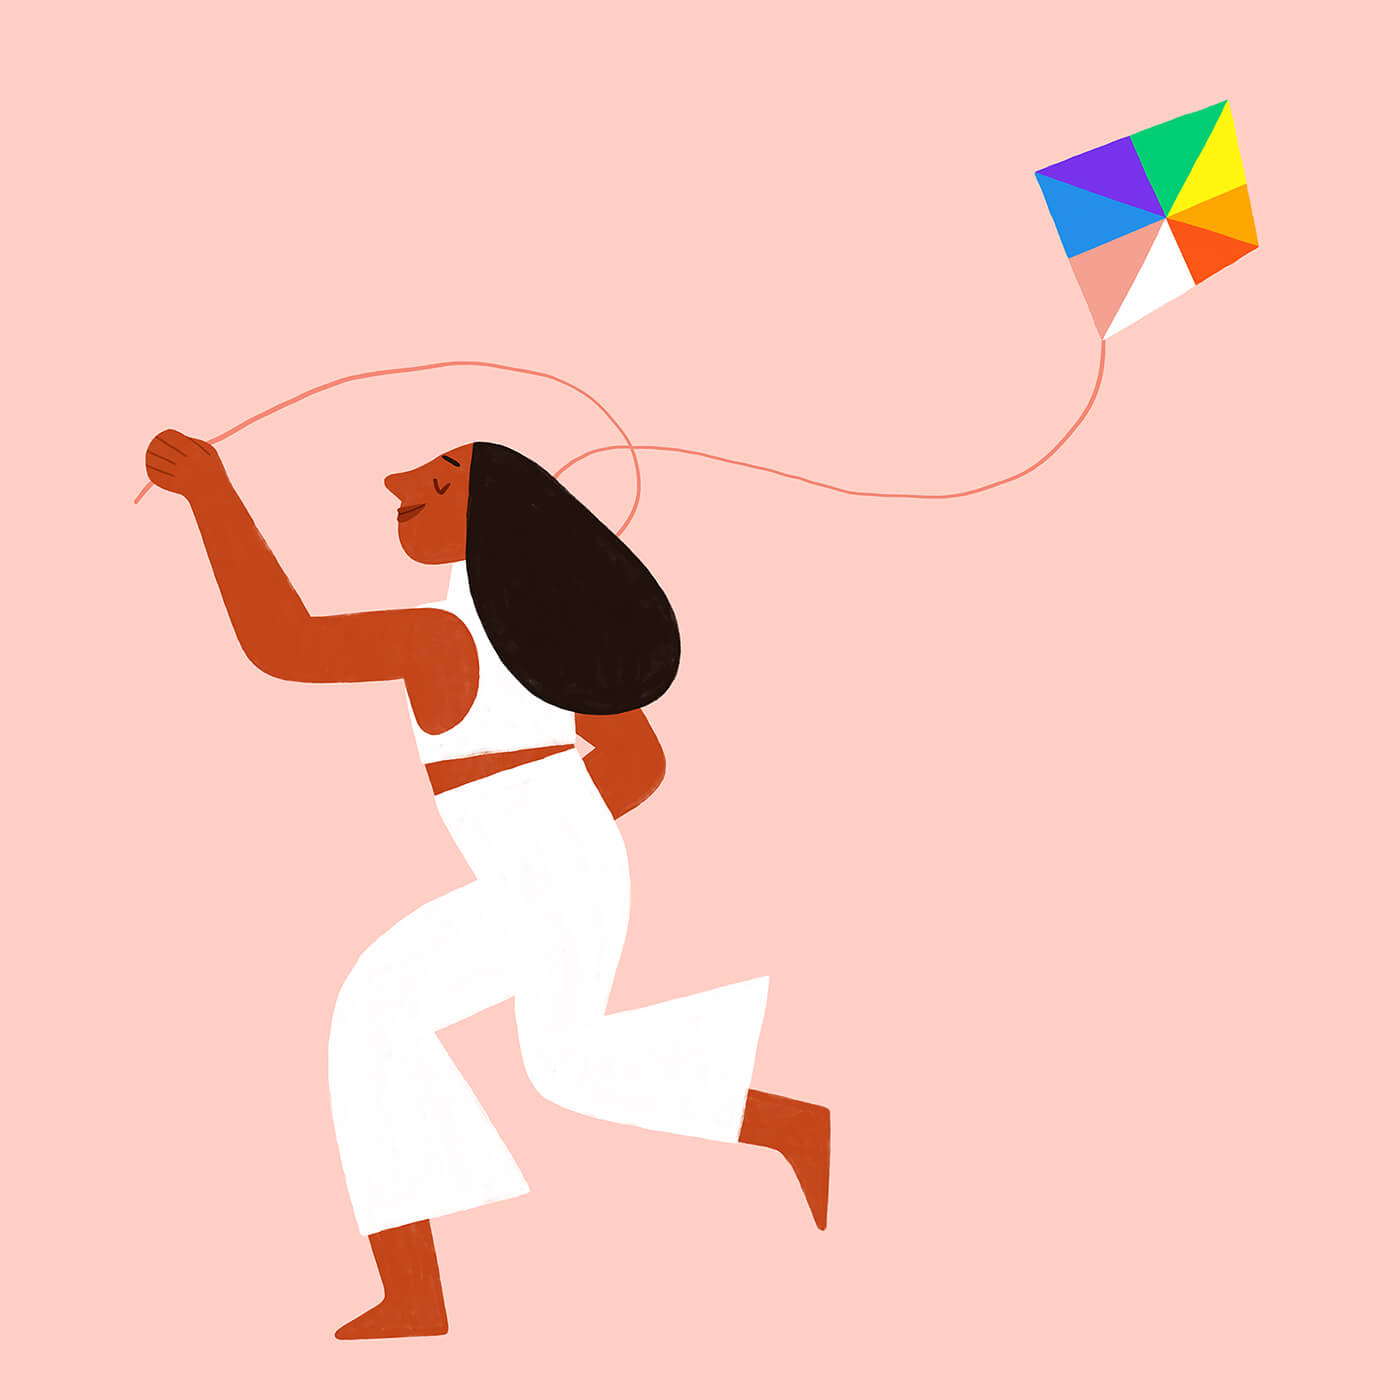 ueno-pride-queer-rainbow-june-kite-proud-illustration-violeta-noy